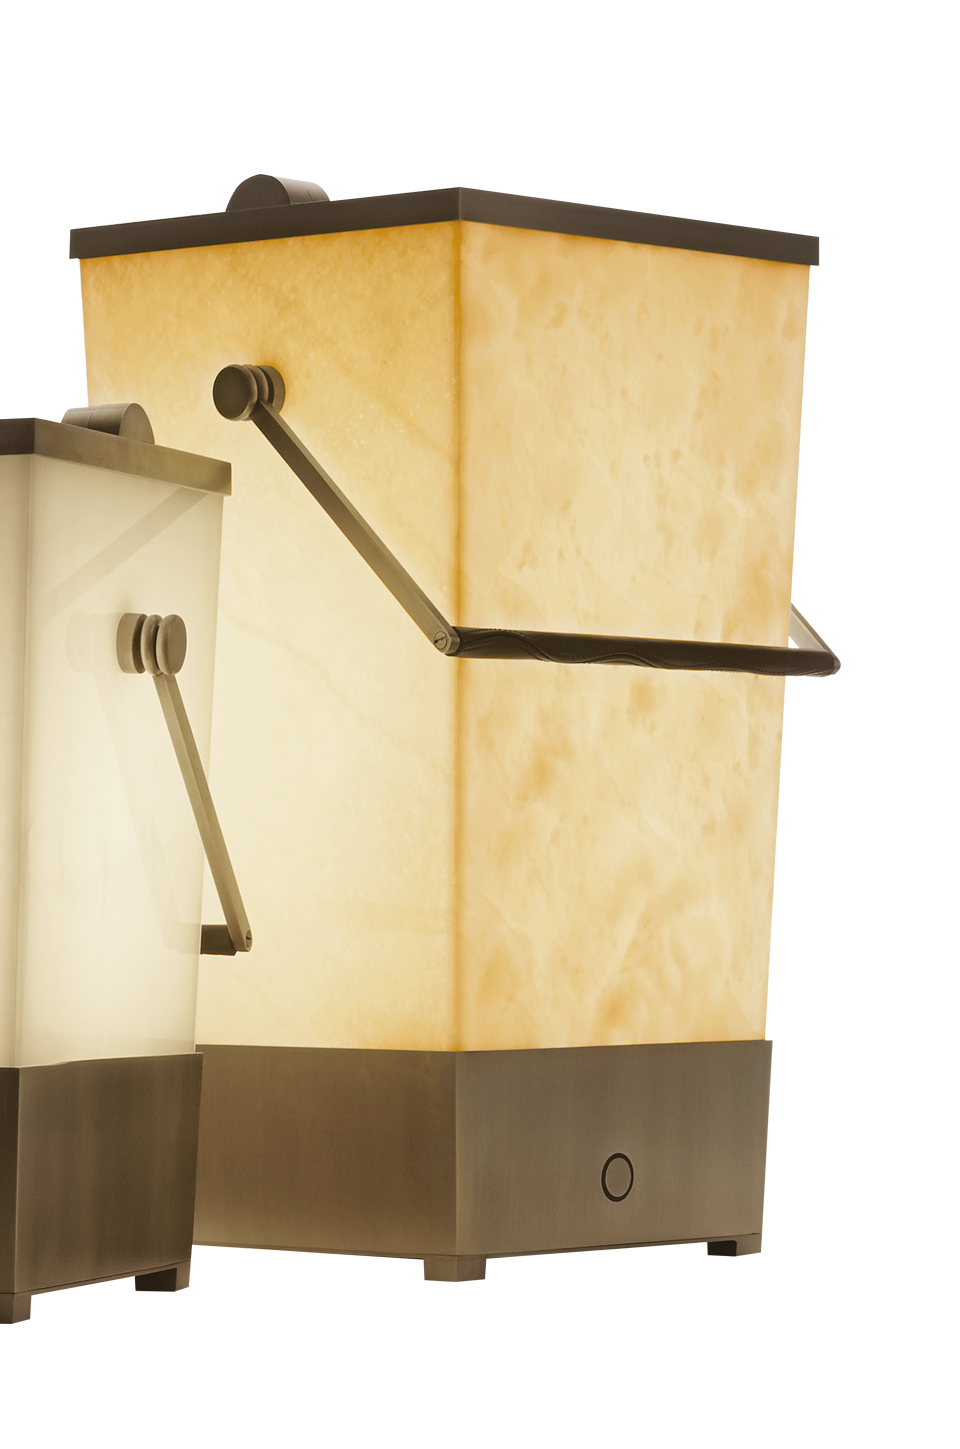 Hara è una lampada da terra a LED senza fili, a forma di secchiello con un manico in bronzo rivestito in pelle, del catalogo di Promemoria | Promemoria